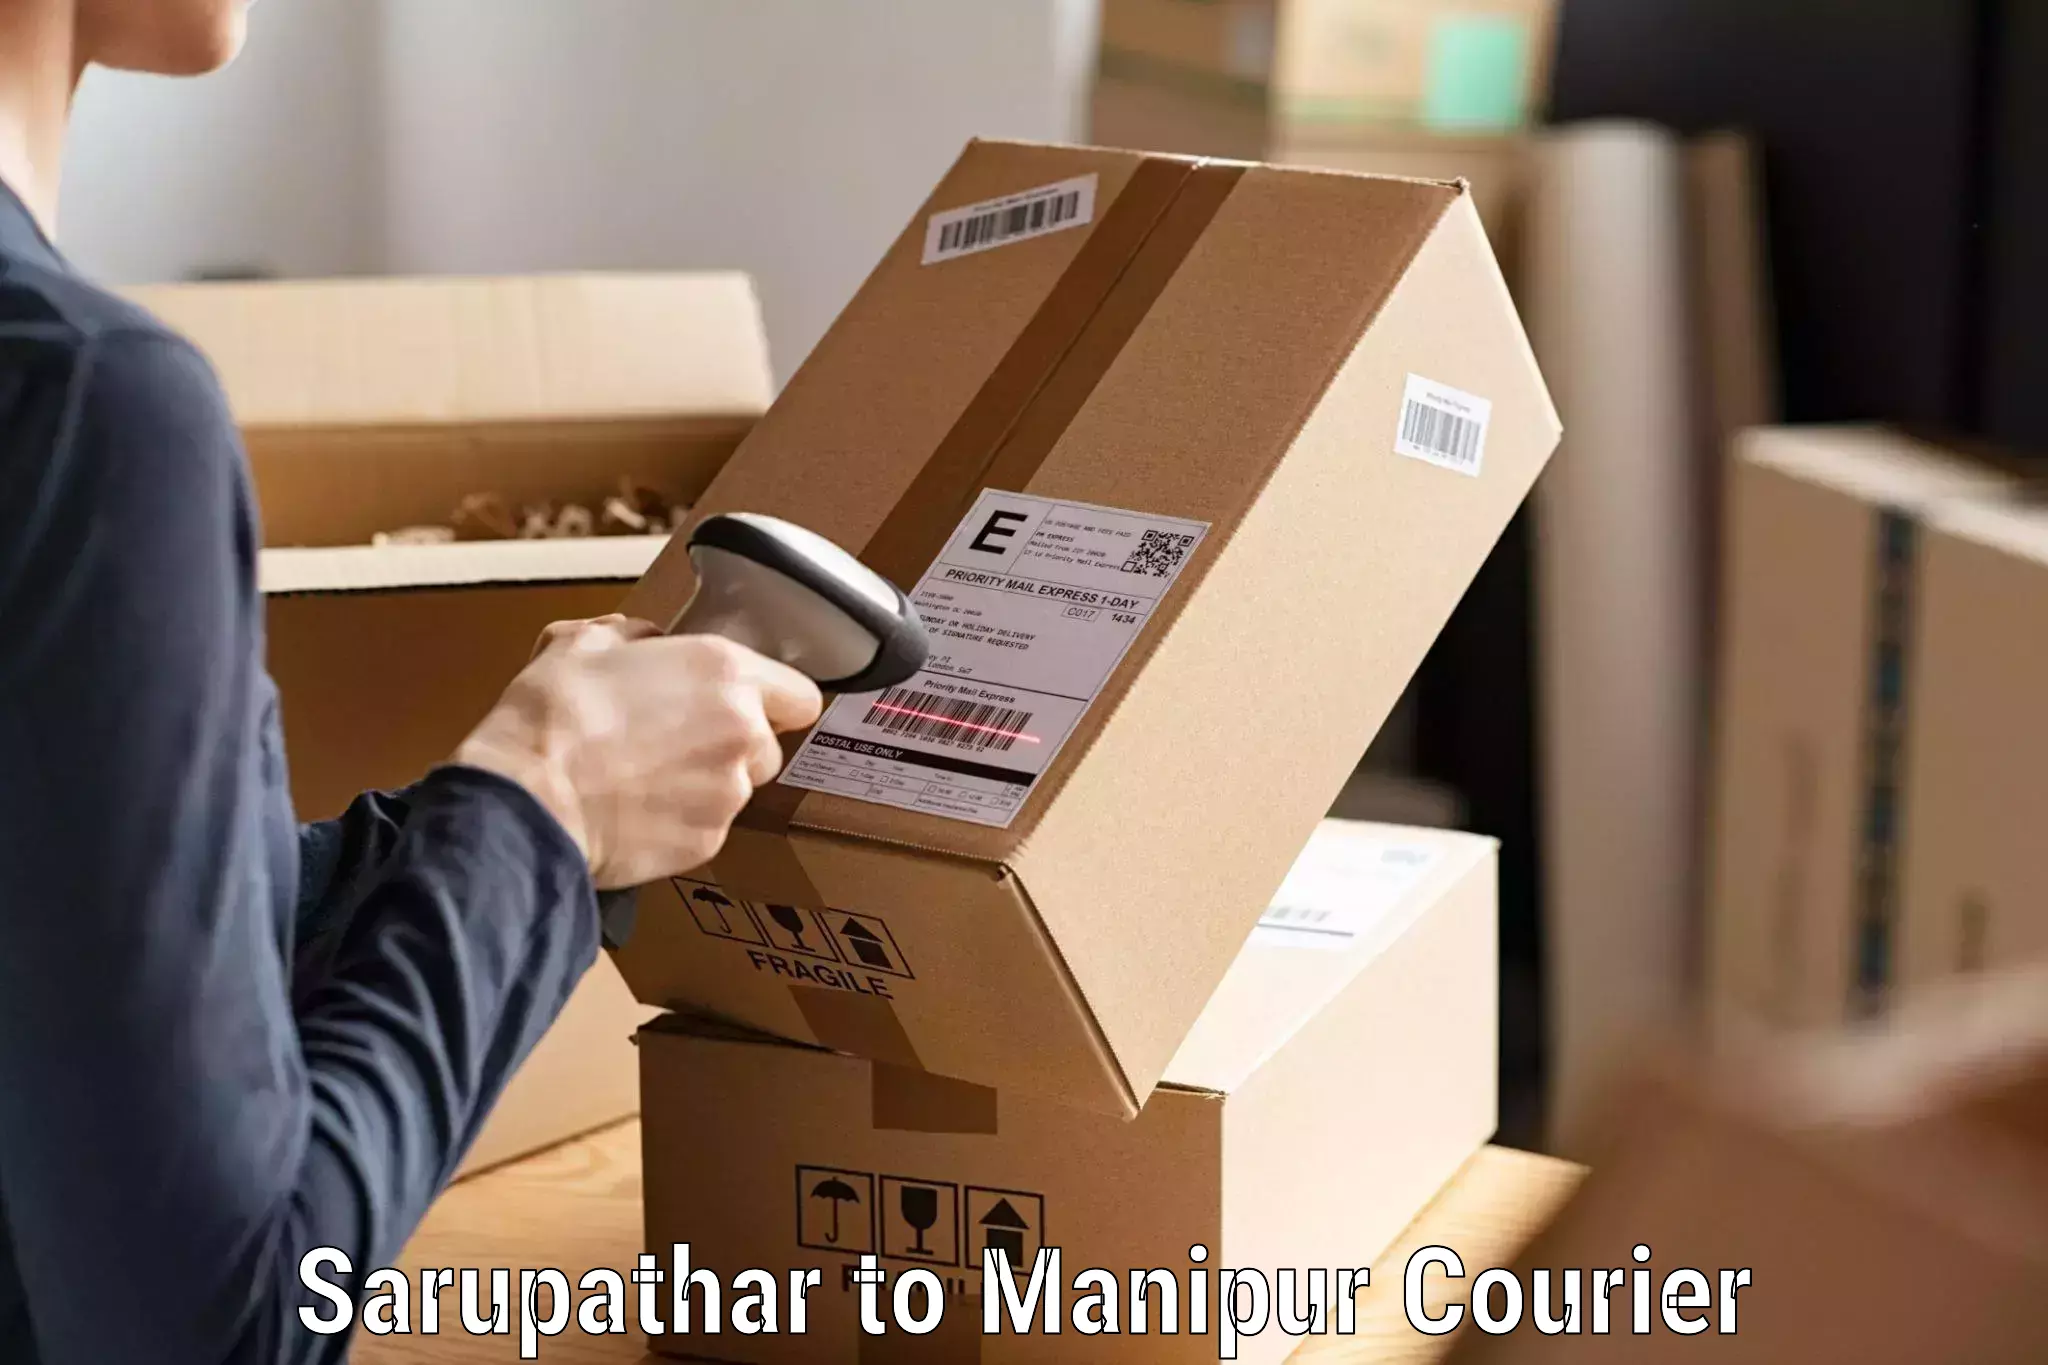 Professional courier handling Sarupathar to Ukhrul